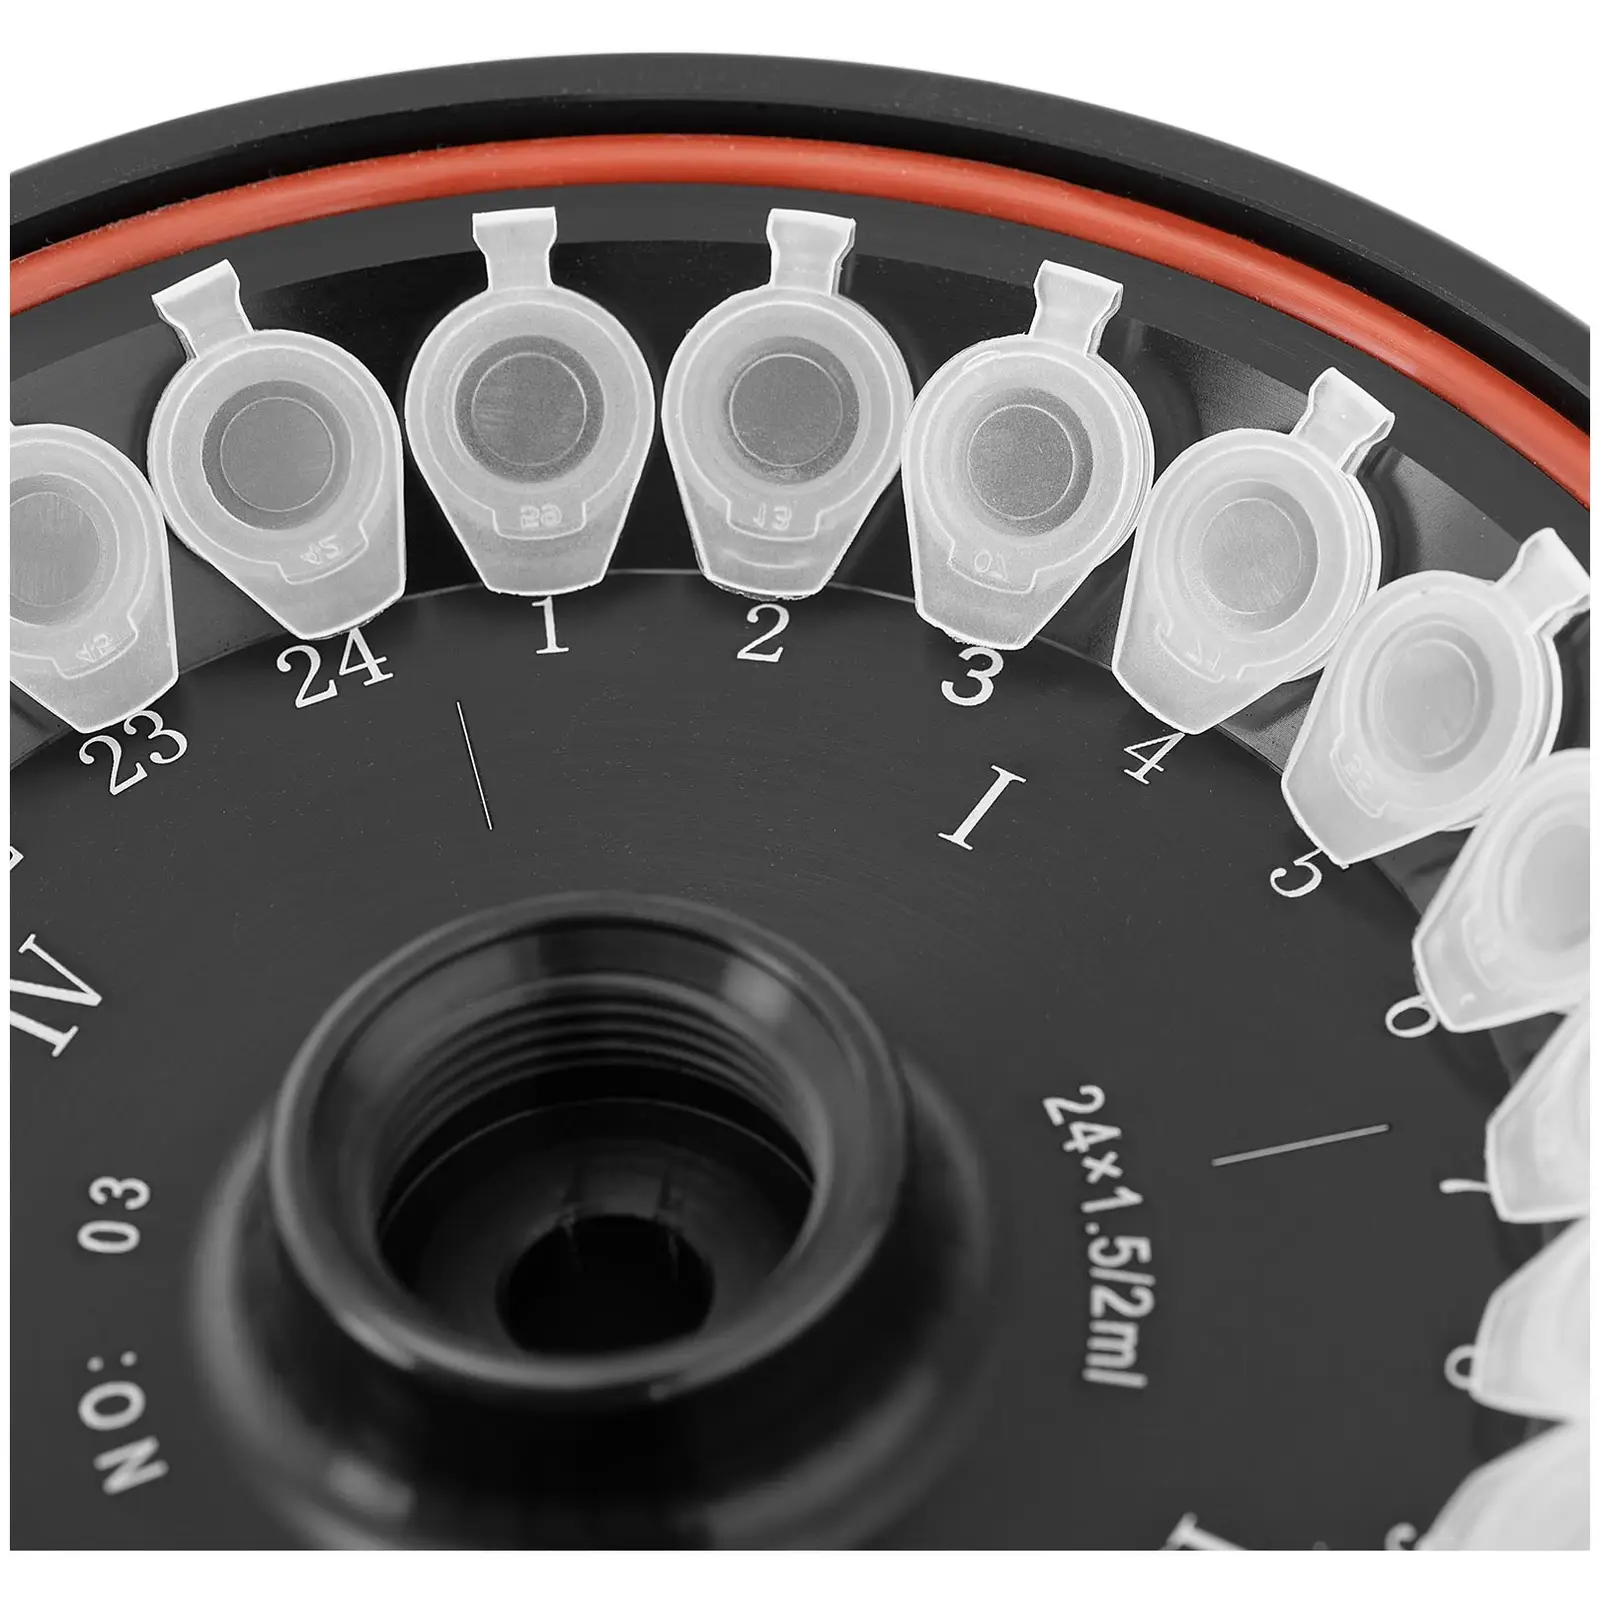 Labor centrifuga készlet 4 x csőcsík 8PCR 0,2 ml RCF 20 600 xg extra szögrotorral 24 x 1,5/2 ml